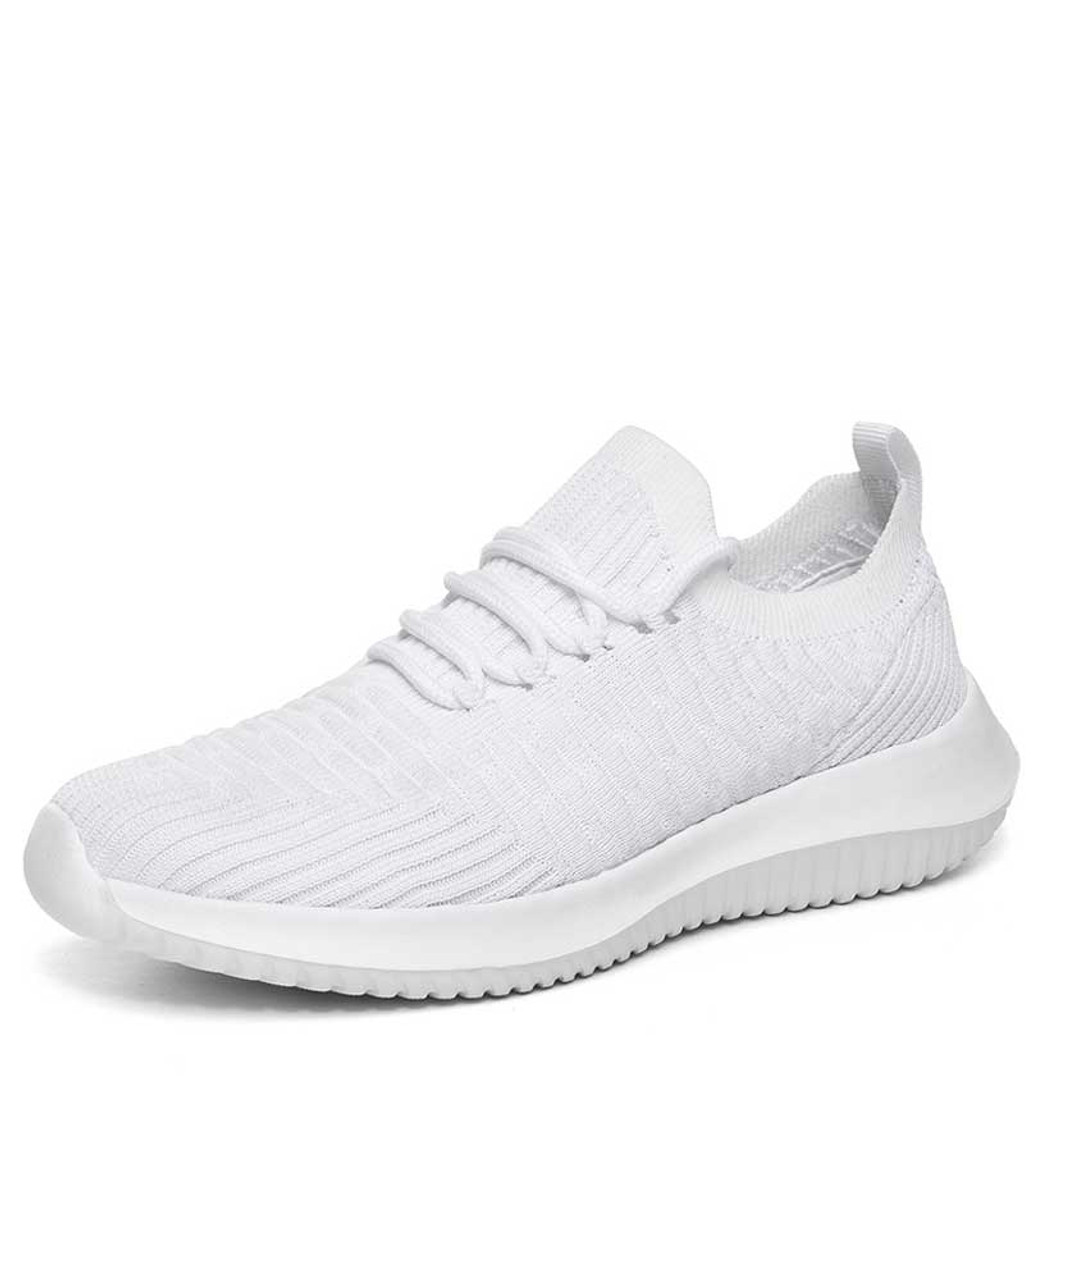 white flyknit sneakers